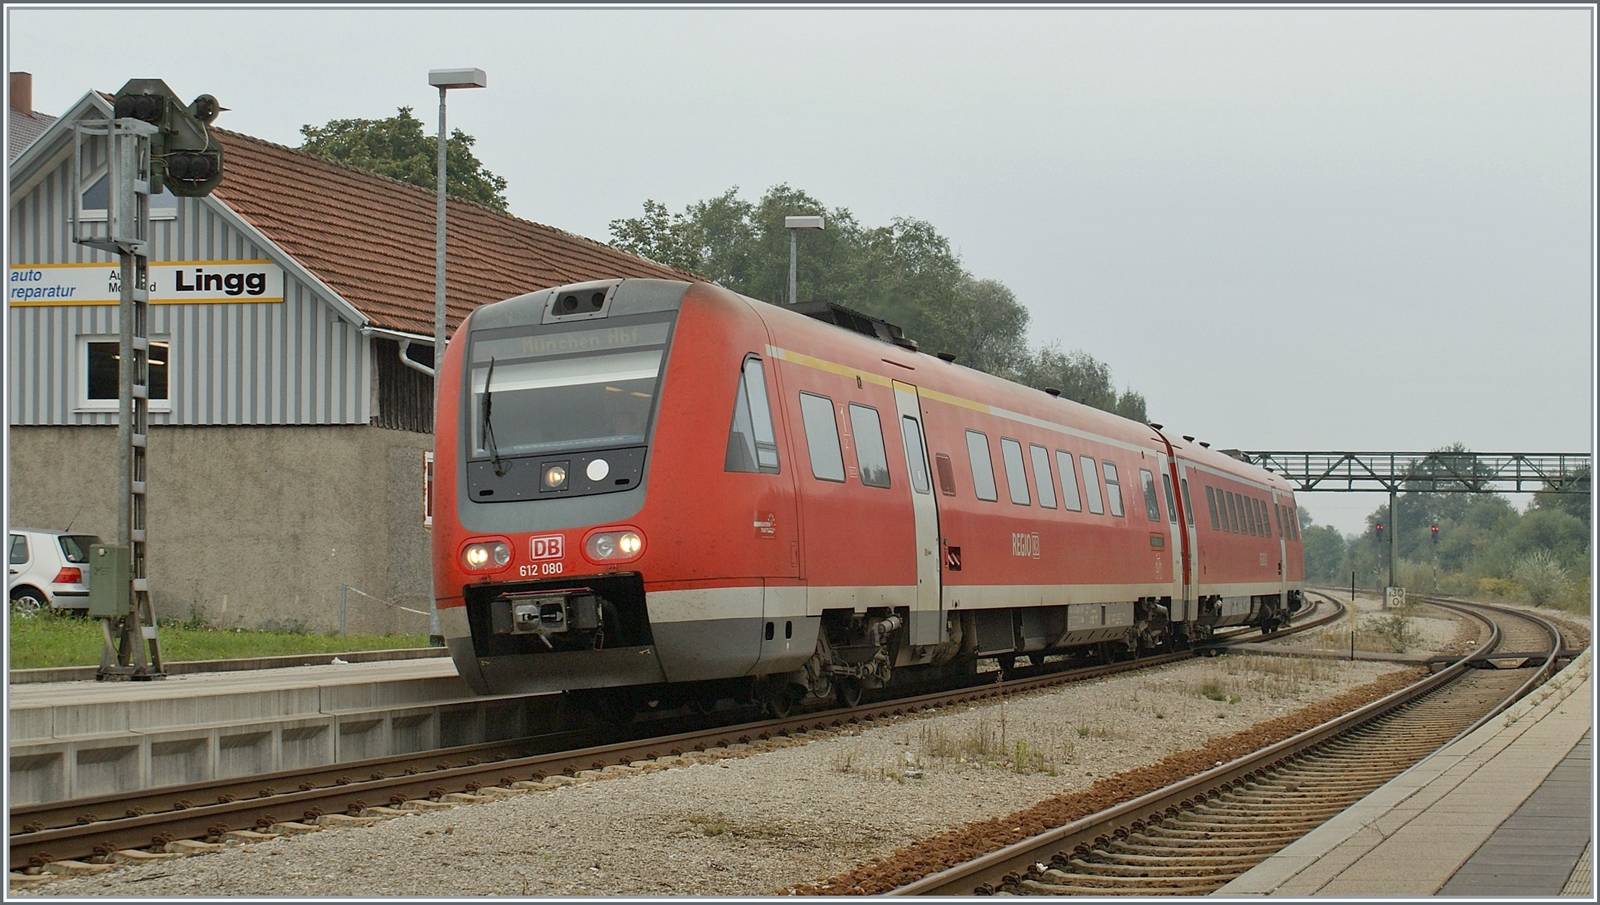 Der DB 612 080 auf der Fahrt von Lindau Hbf nach München Hbf erreicht Hergatz. 

11. September 2009